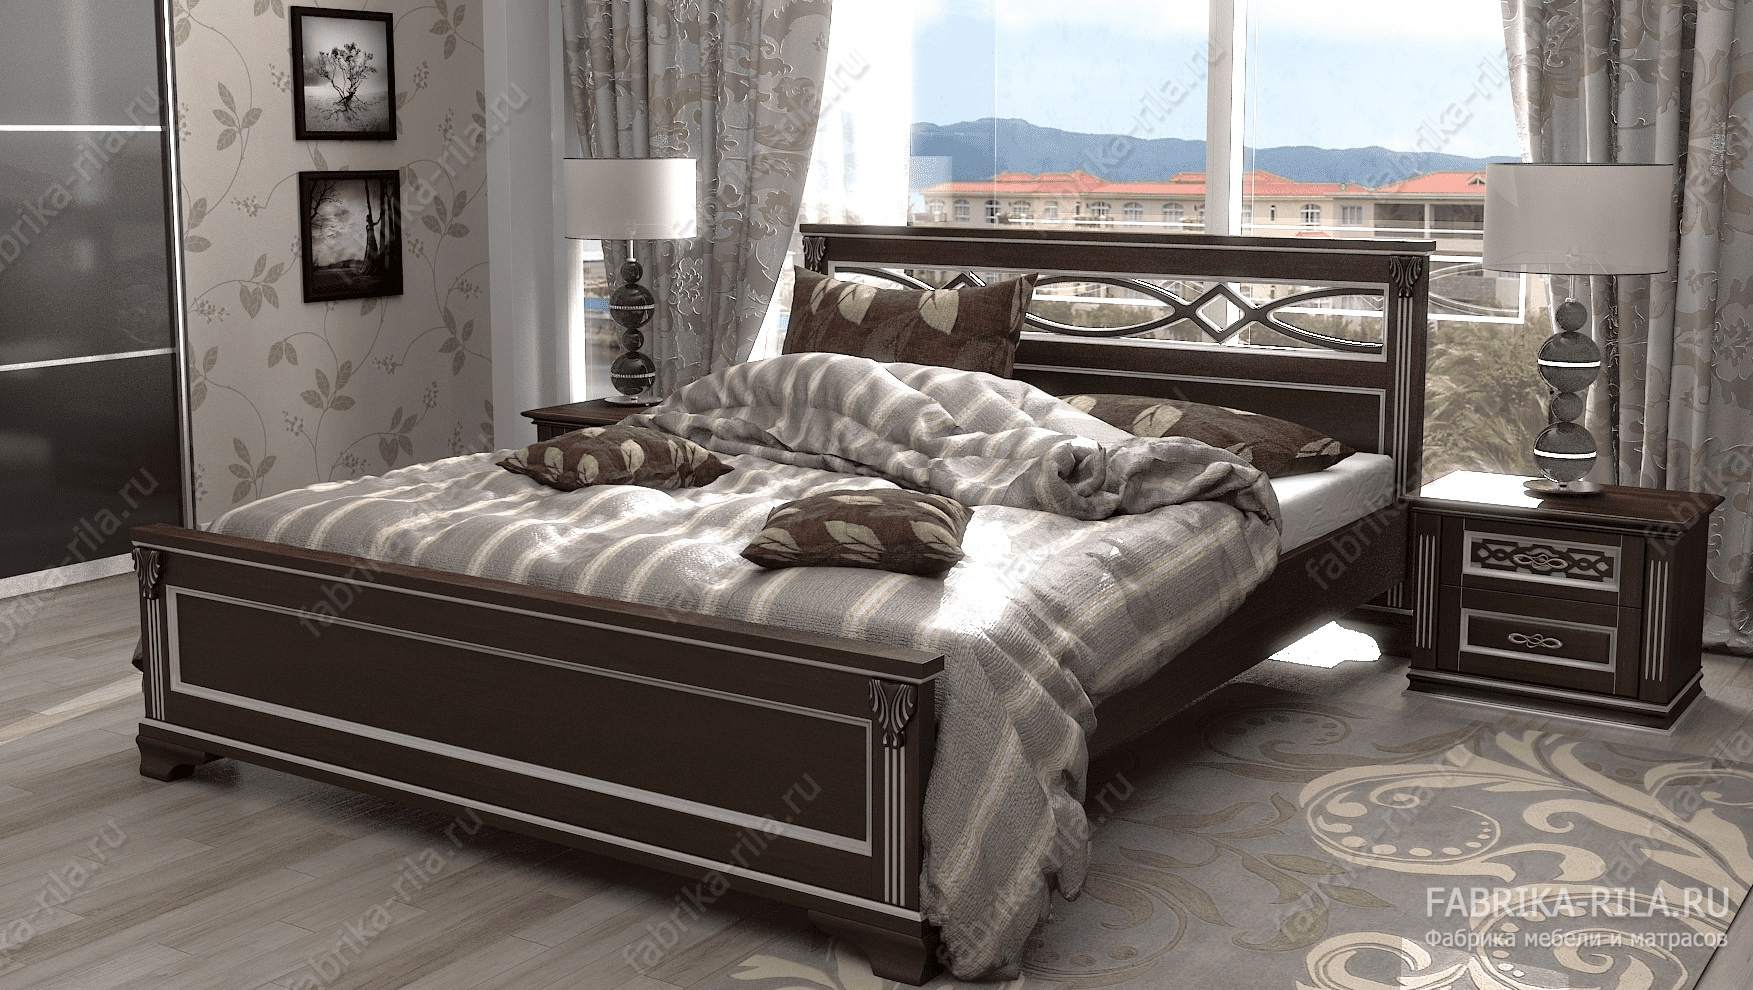 Кровать Lirоna 1 — 180x190 см. из сосны